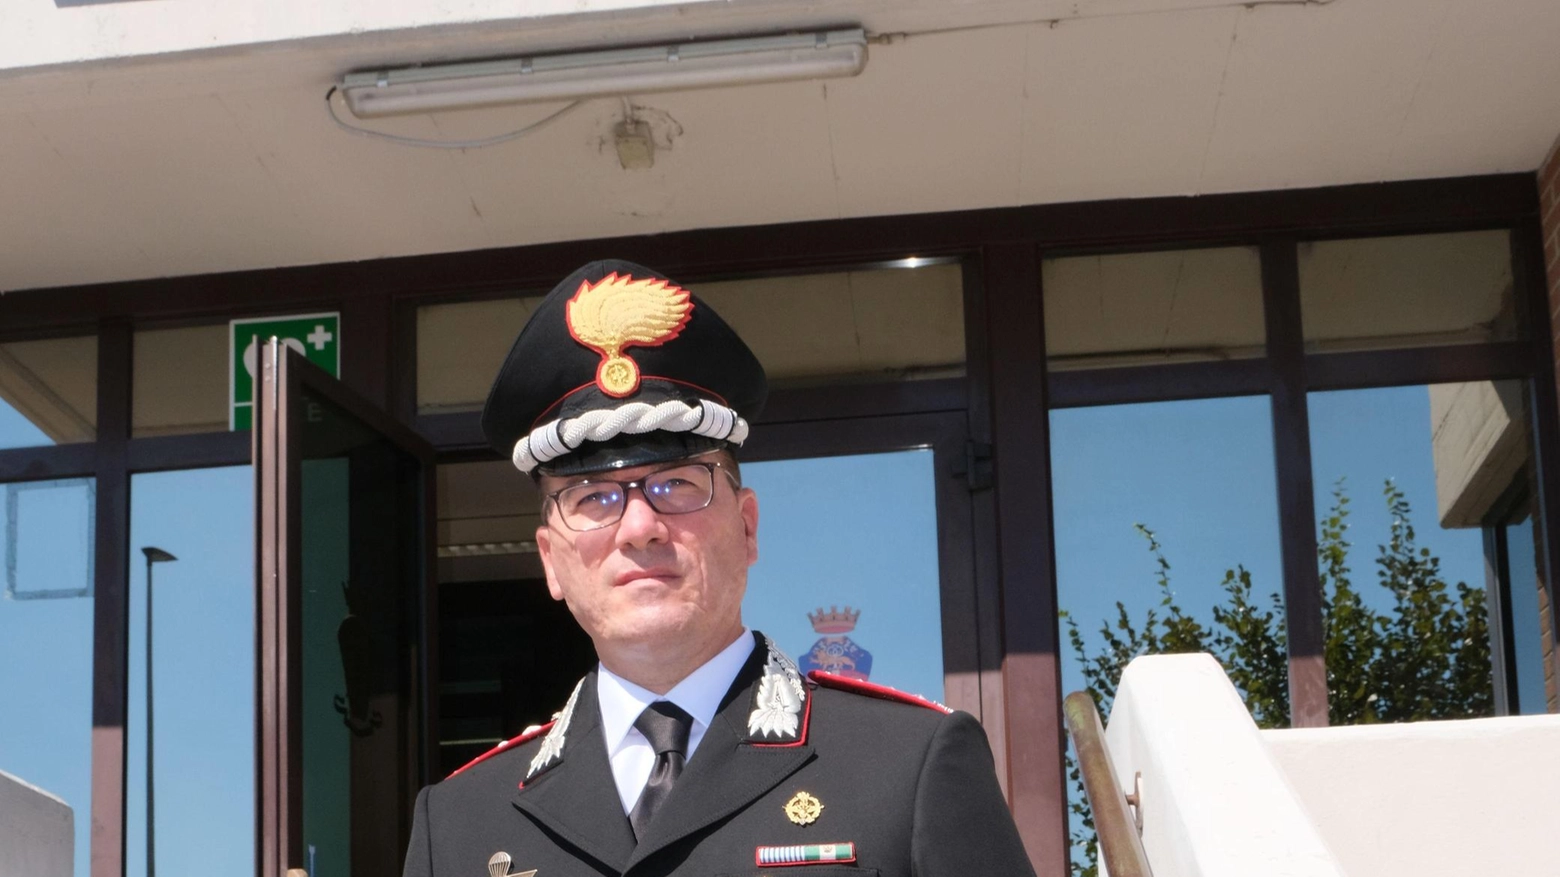 Il comandante del gruppo carabinieri: "Le baby gang non hanno vincoli associativi, sono situazioni di fragilità sociale. Nuove tecnologie per monitorare i reati sul territorio".